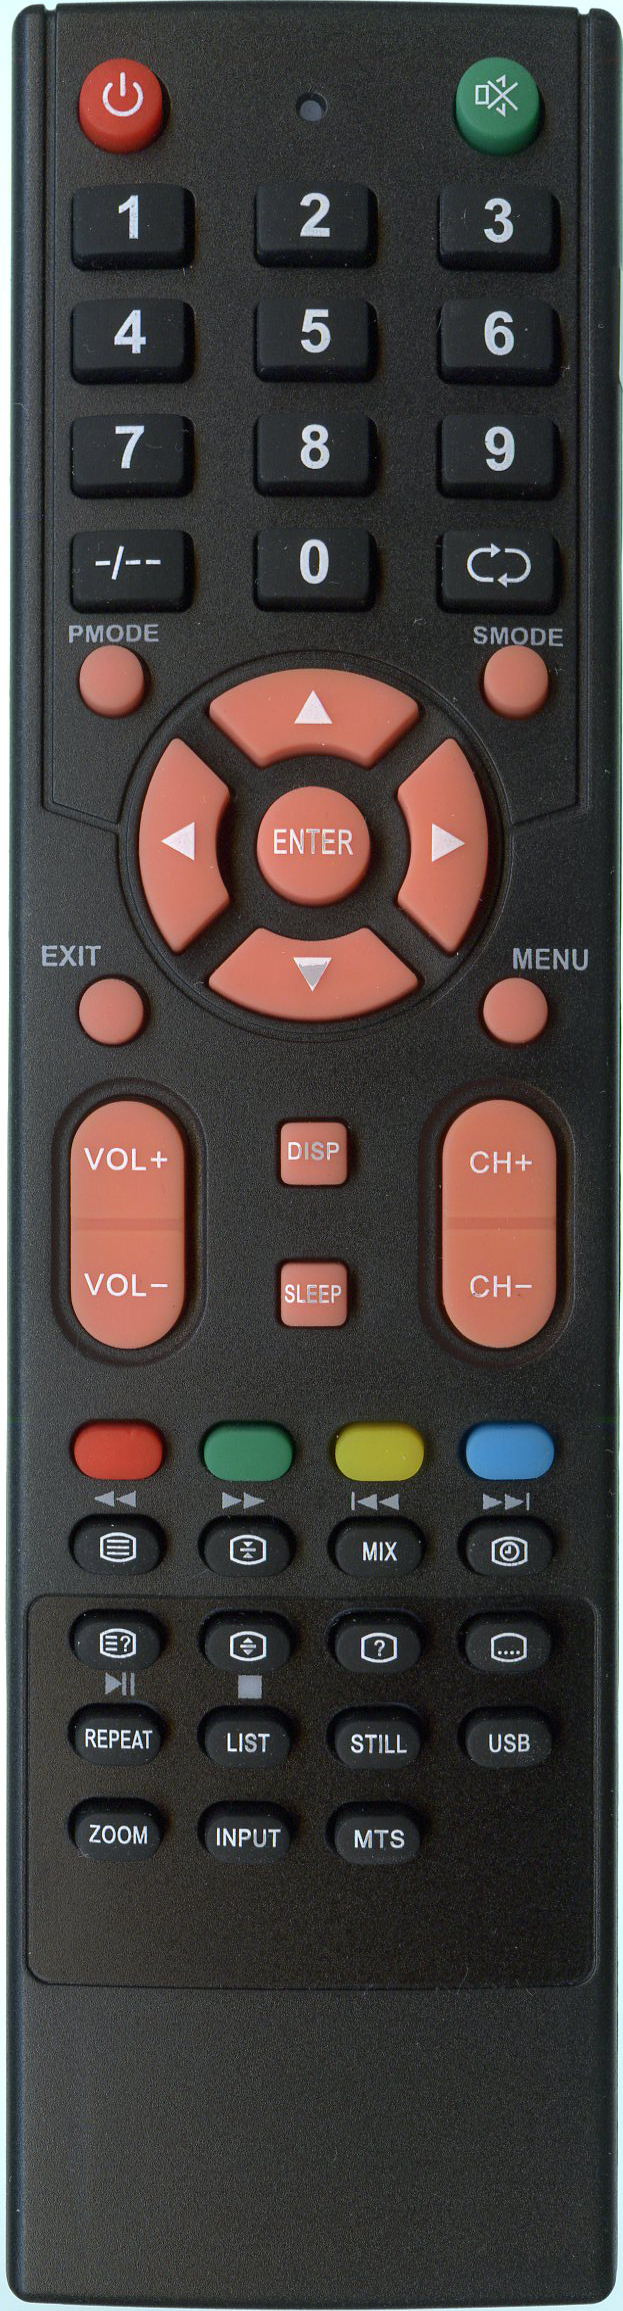 Пульт для телевизора ERGO LE17D5 – низкие цены, кредит, оплата частями .